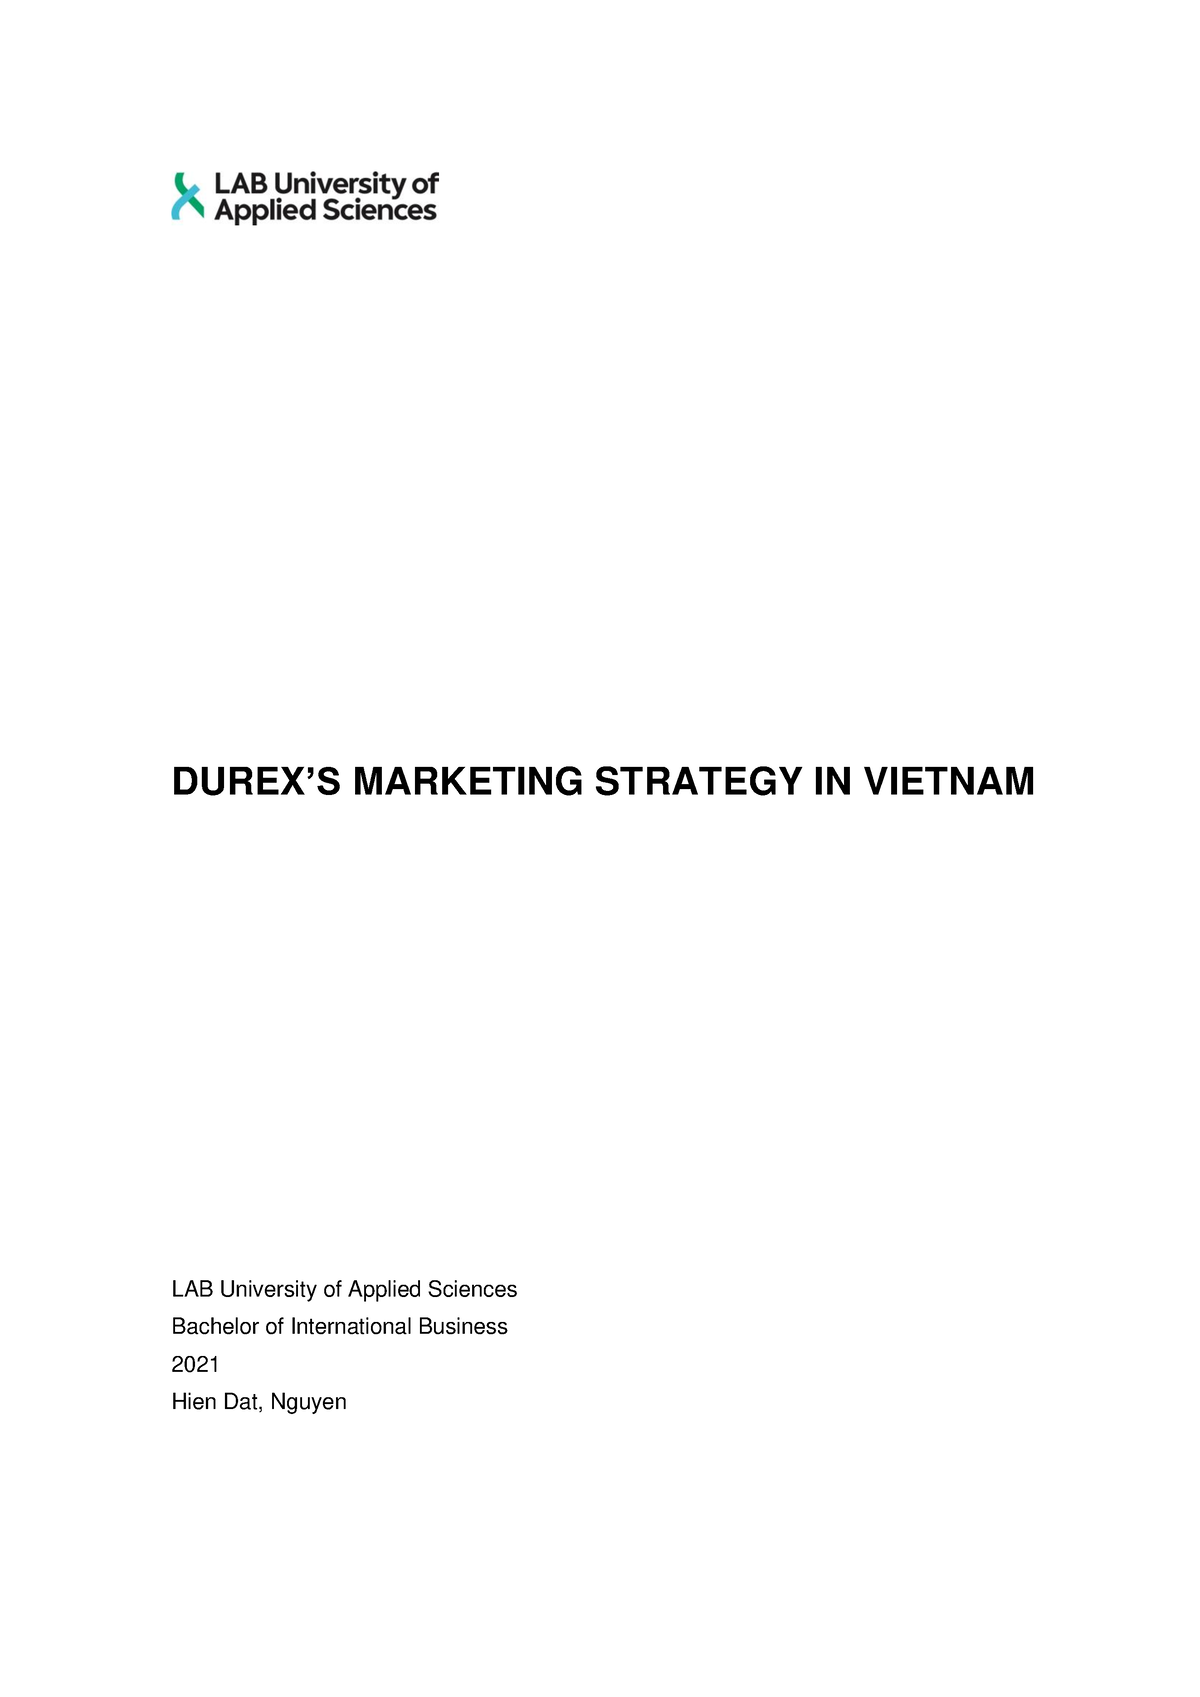 Durex Marketing Strategy - DUREX’S MARKETING STRATEGY IN VIETNAM LAB ...